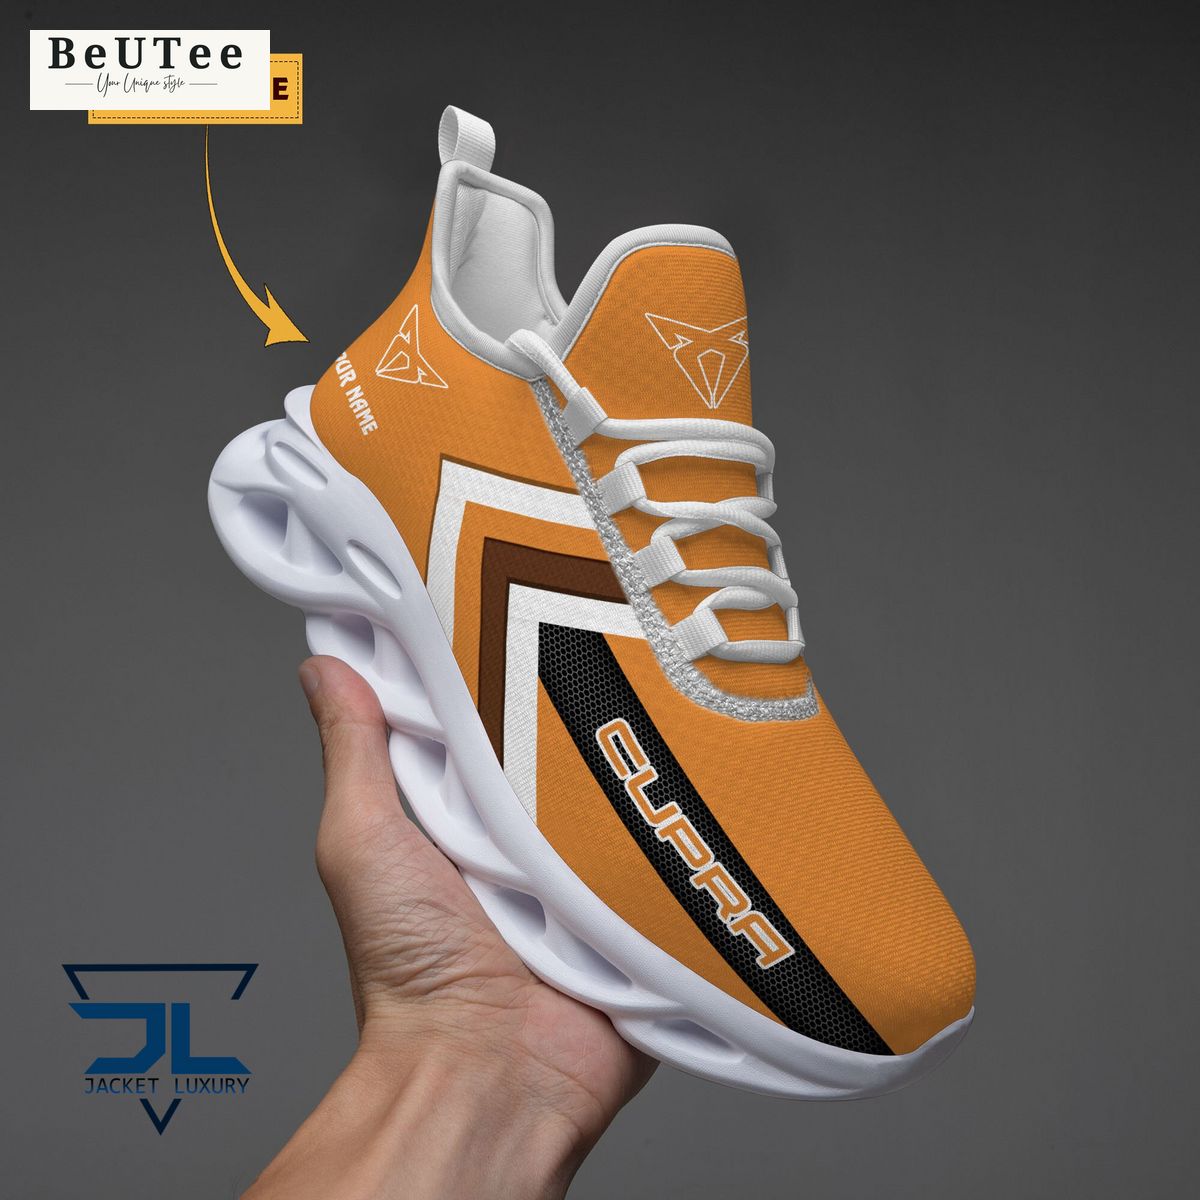 cupra automobile brand personalized max soul shoes 1 rIo4B